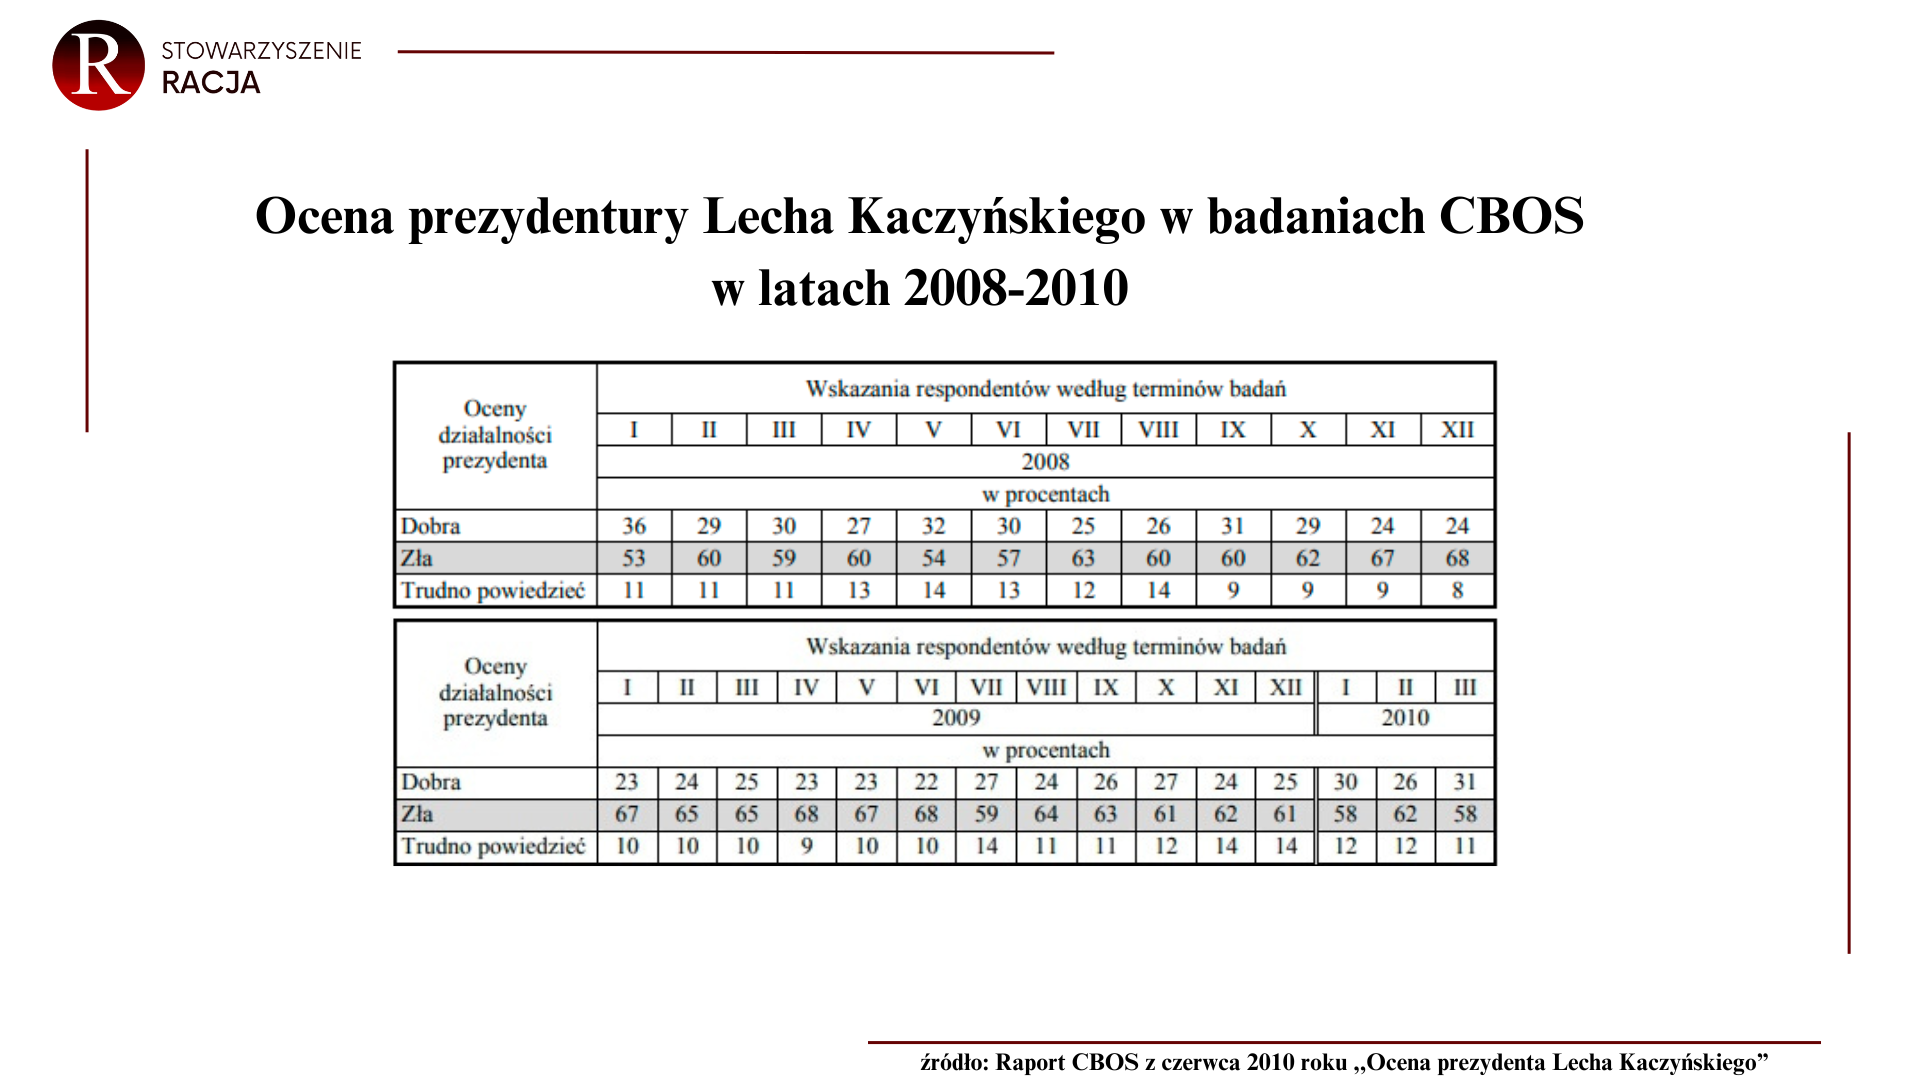 Ocena prezydentury Lecha Kaczyńskiego